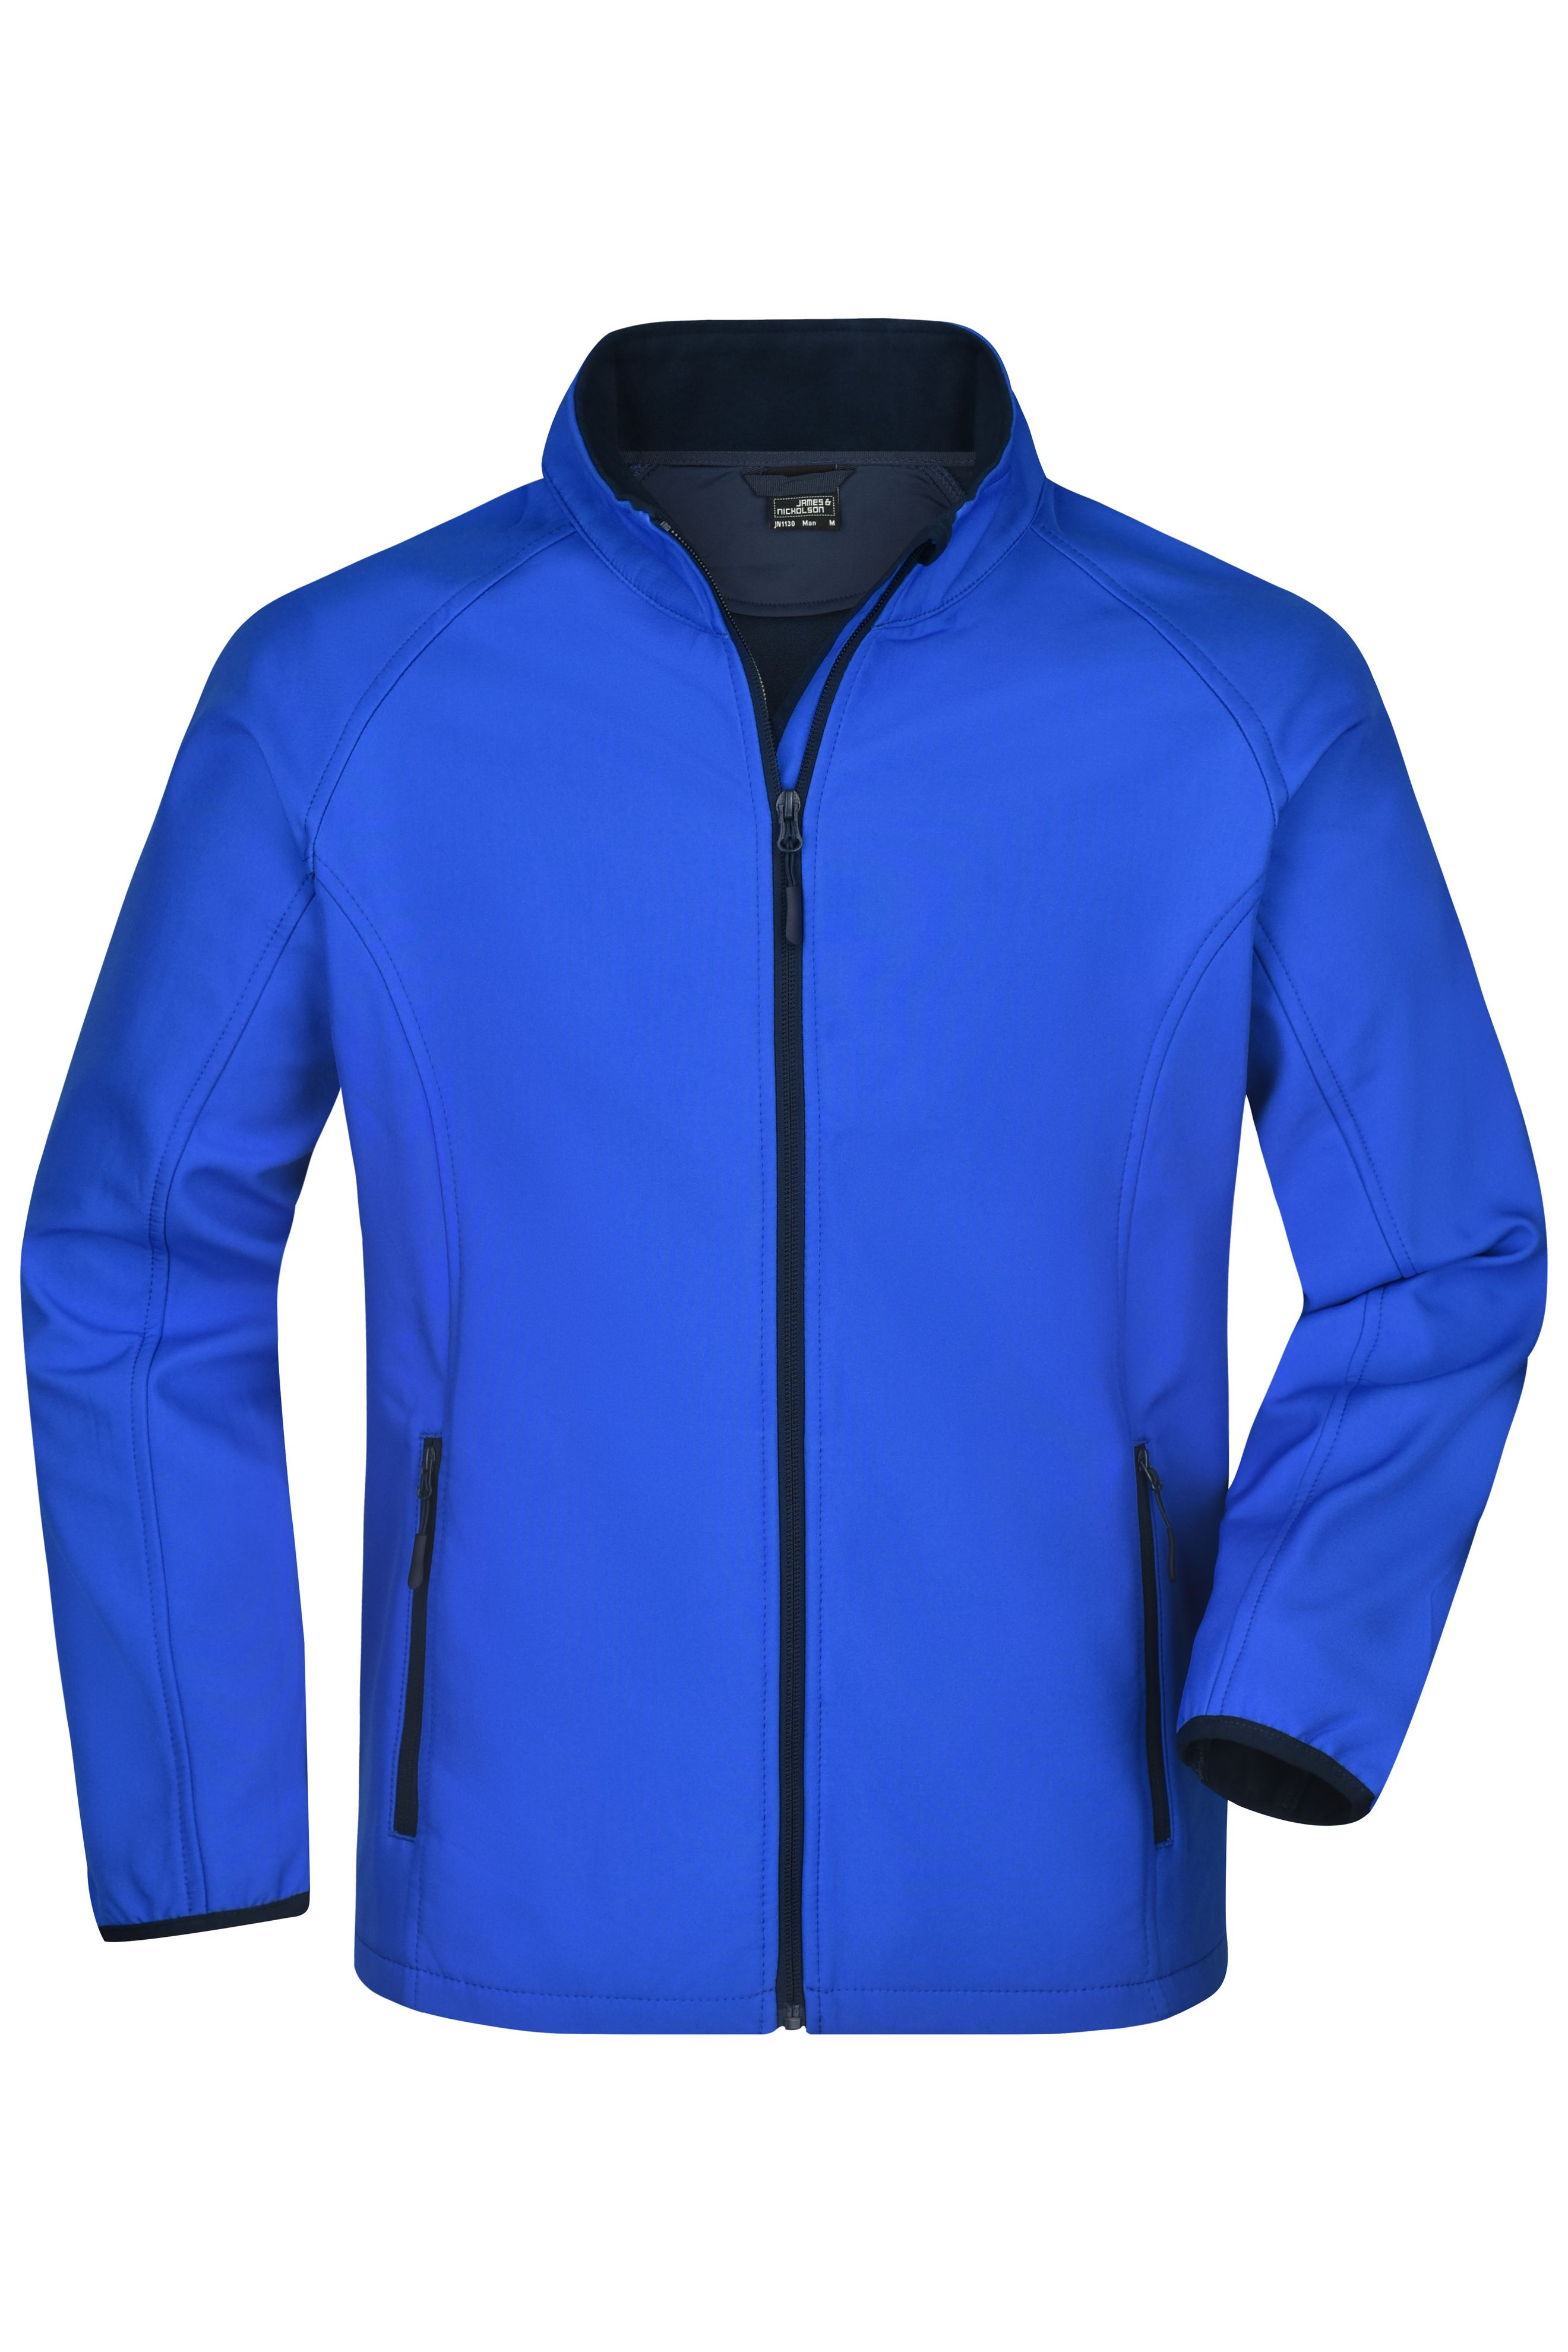 Men Men's Promo Softshell Jacket Nautic-blue/navy-Promotextilien.de